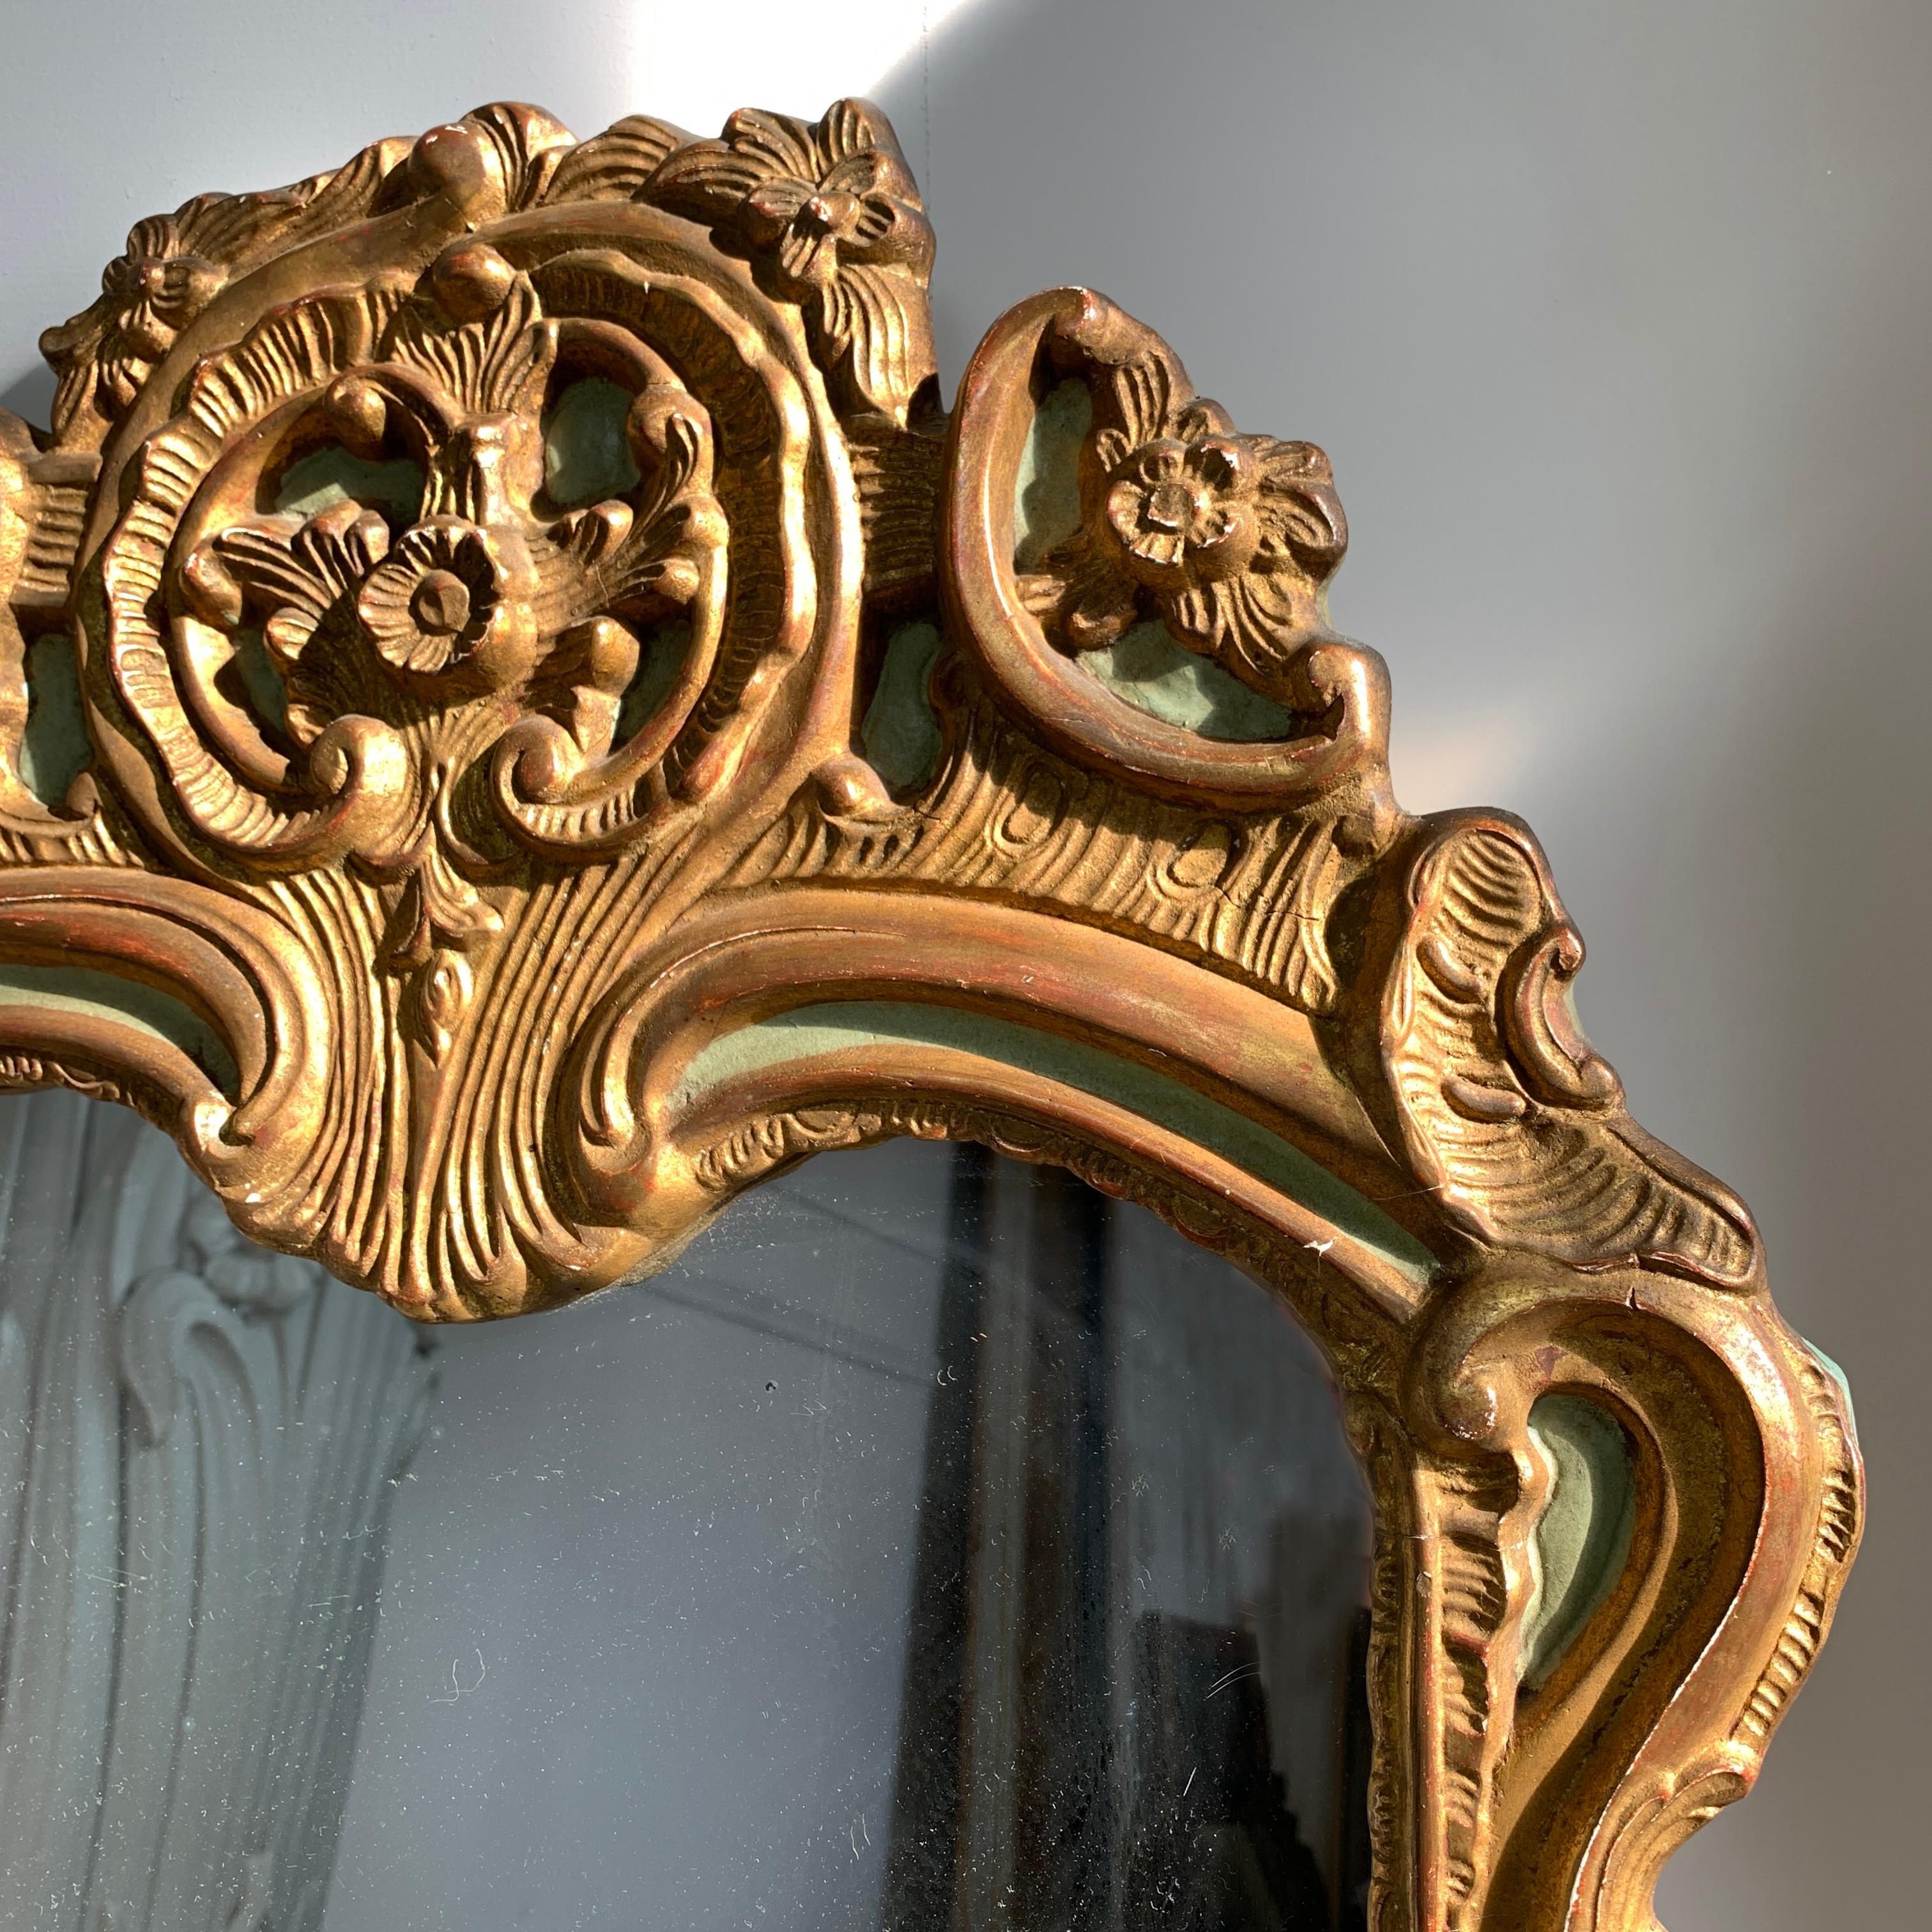 Schöner Spiegel aus dem späten 19. Jahrhundert.
Tief geschnitzter Rahmen, schweres Holz, möglicherweise Nussbaum, mit Gold und enteneigrünem Finish.
Wahrscheinlich italienisch, mit späterem Glas.
Auf der Rückseite sind die Überreste einer alten